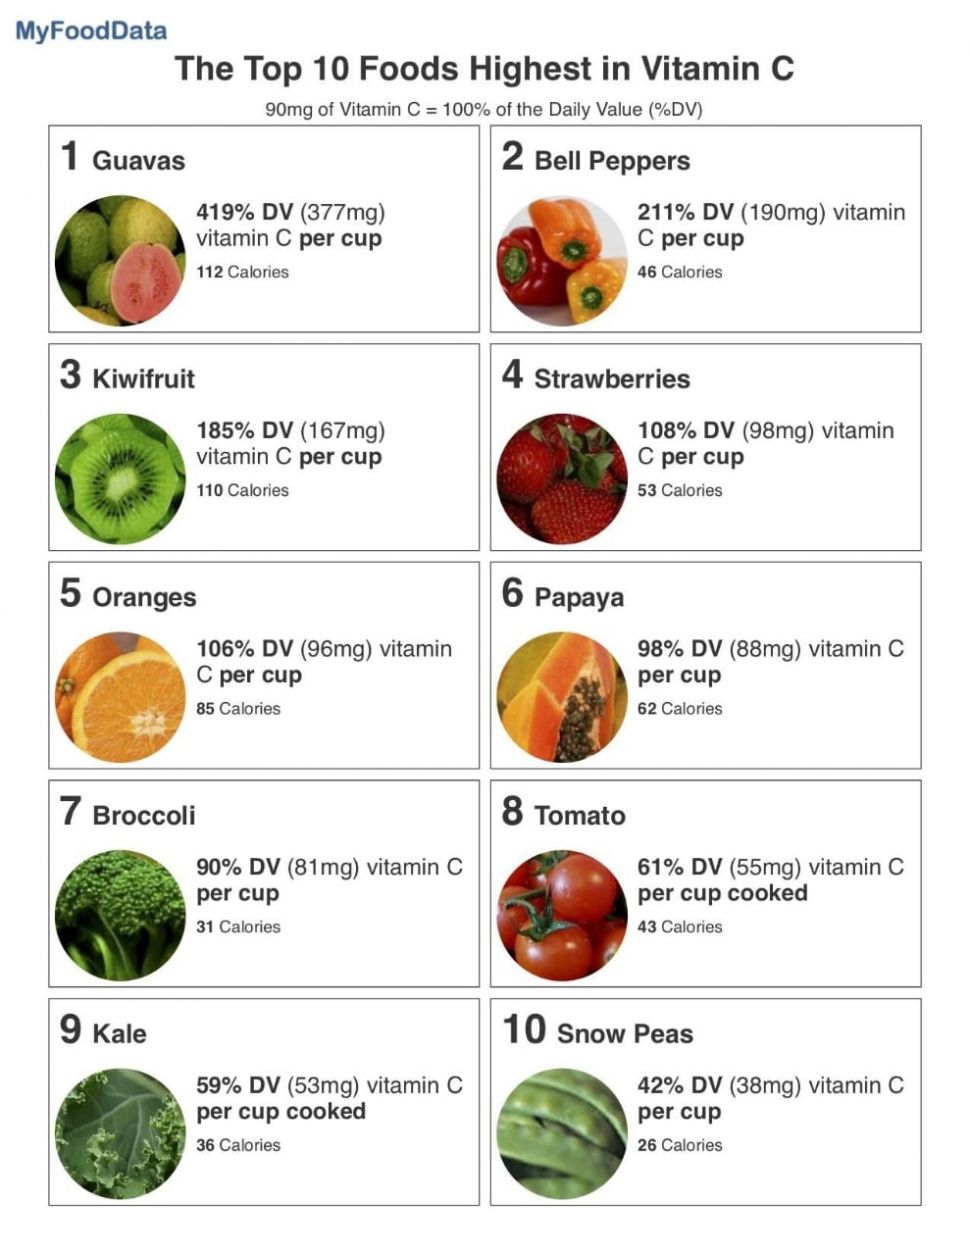 10 Makanan dengan Kandungan Vitamin C Tertinggi, Banyak yang Mudah Ditemui!